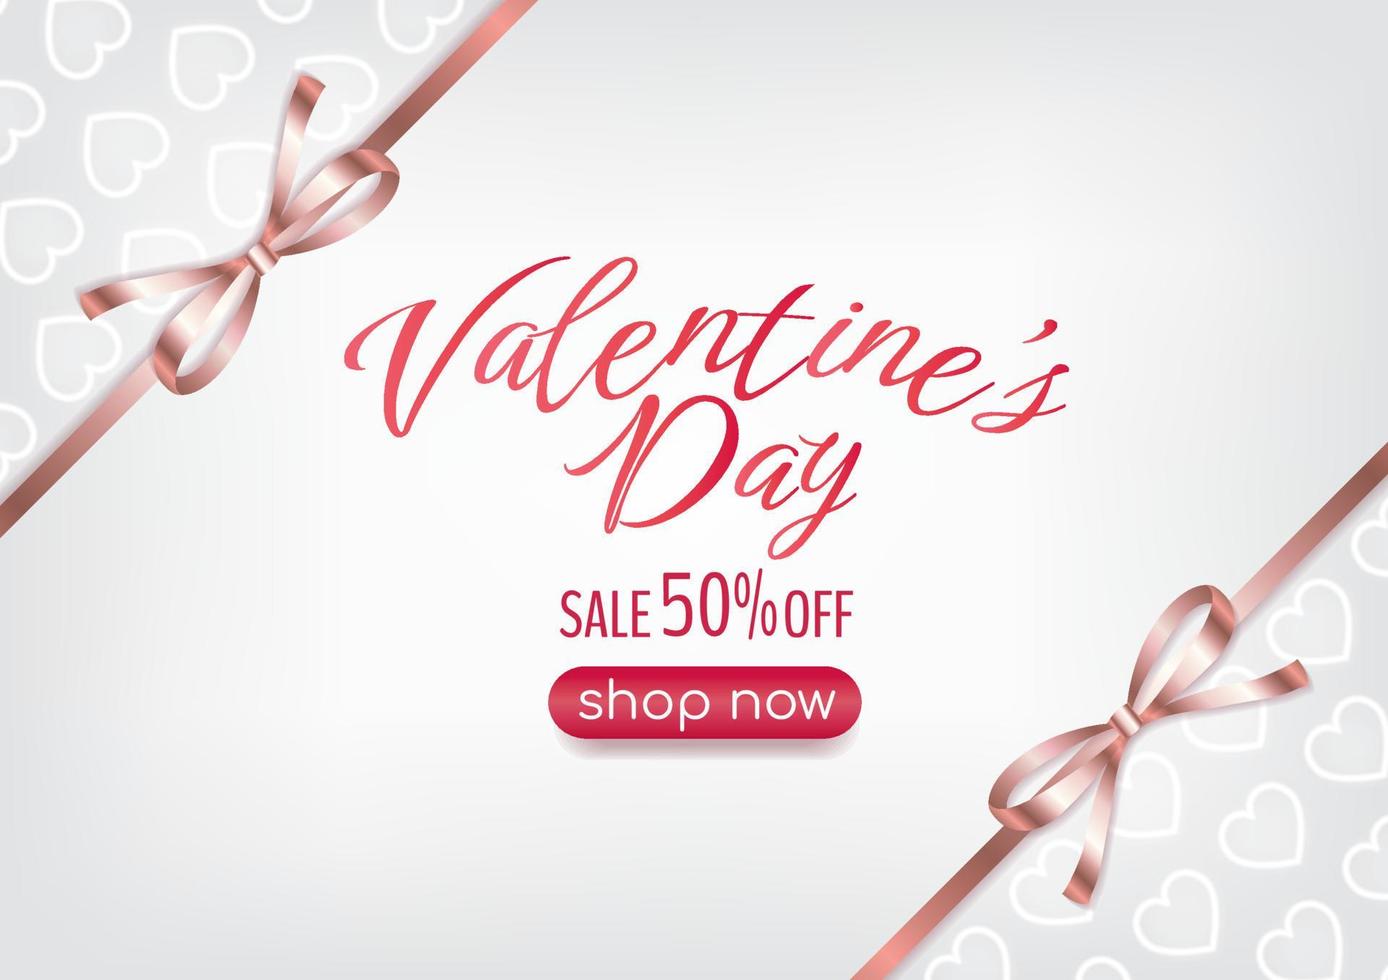 valentine's day sale promotion design for website vector